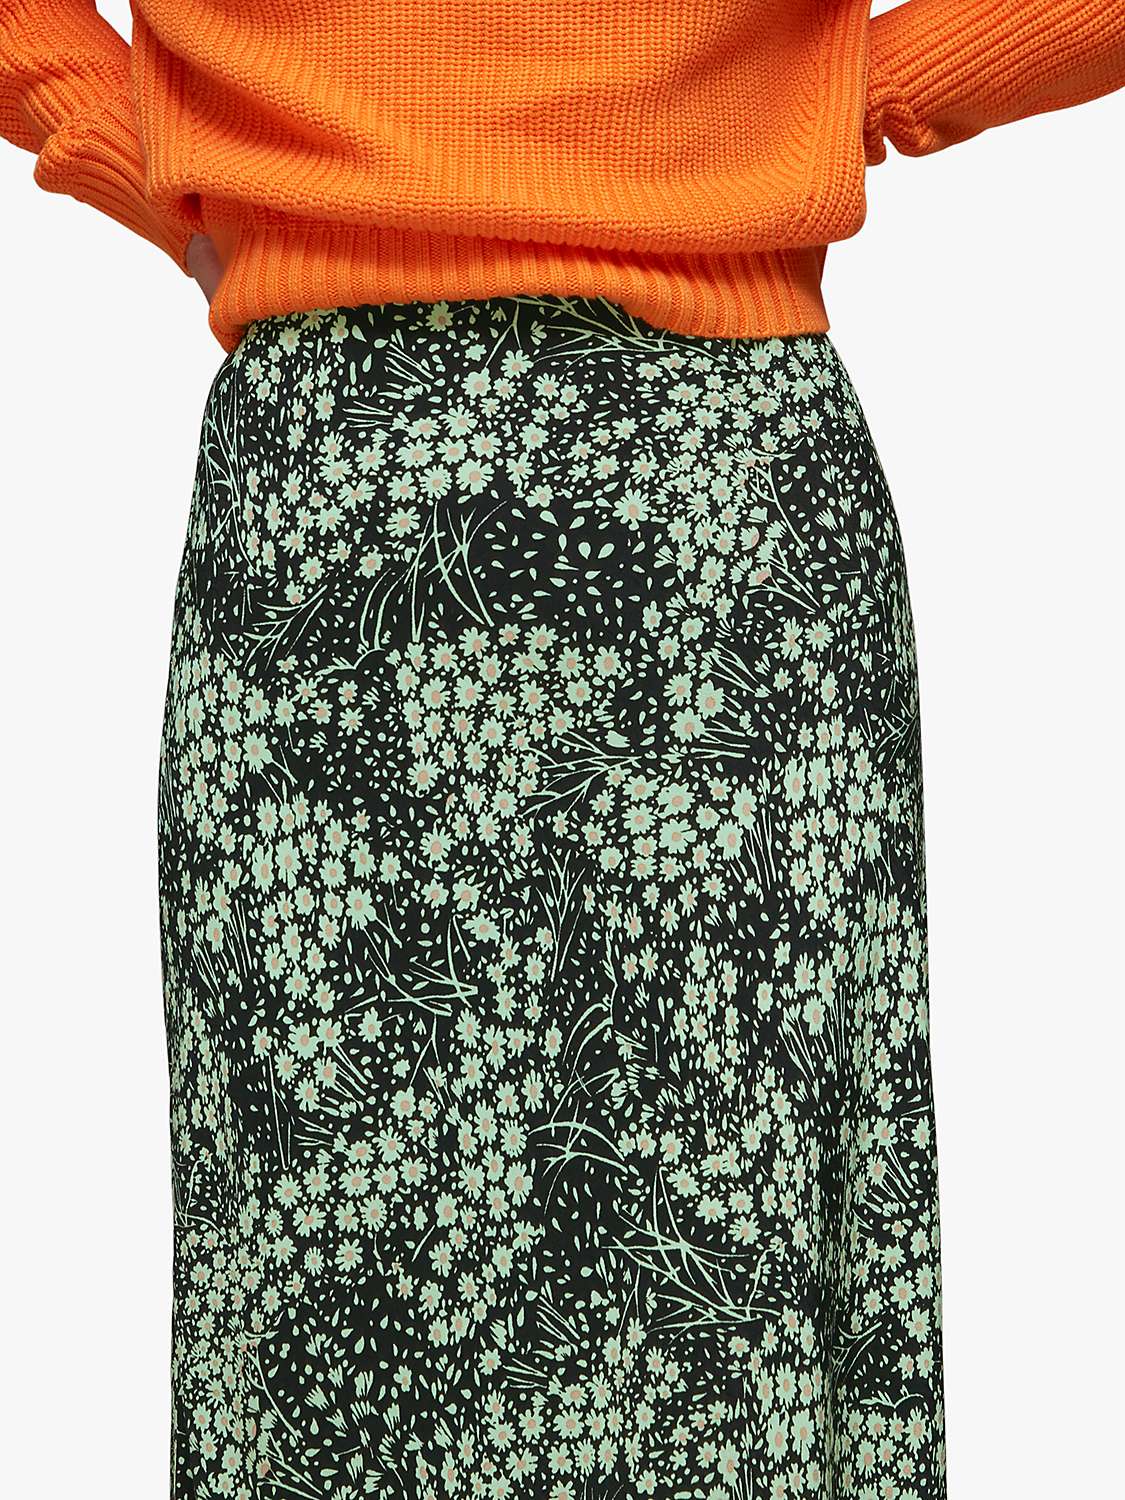 Buy Whistles Daisy Meadow Slip Skirt, Green/Multi Online at johnlewis.com